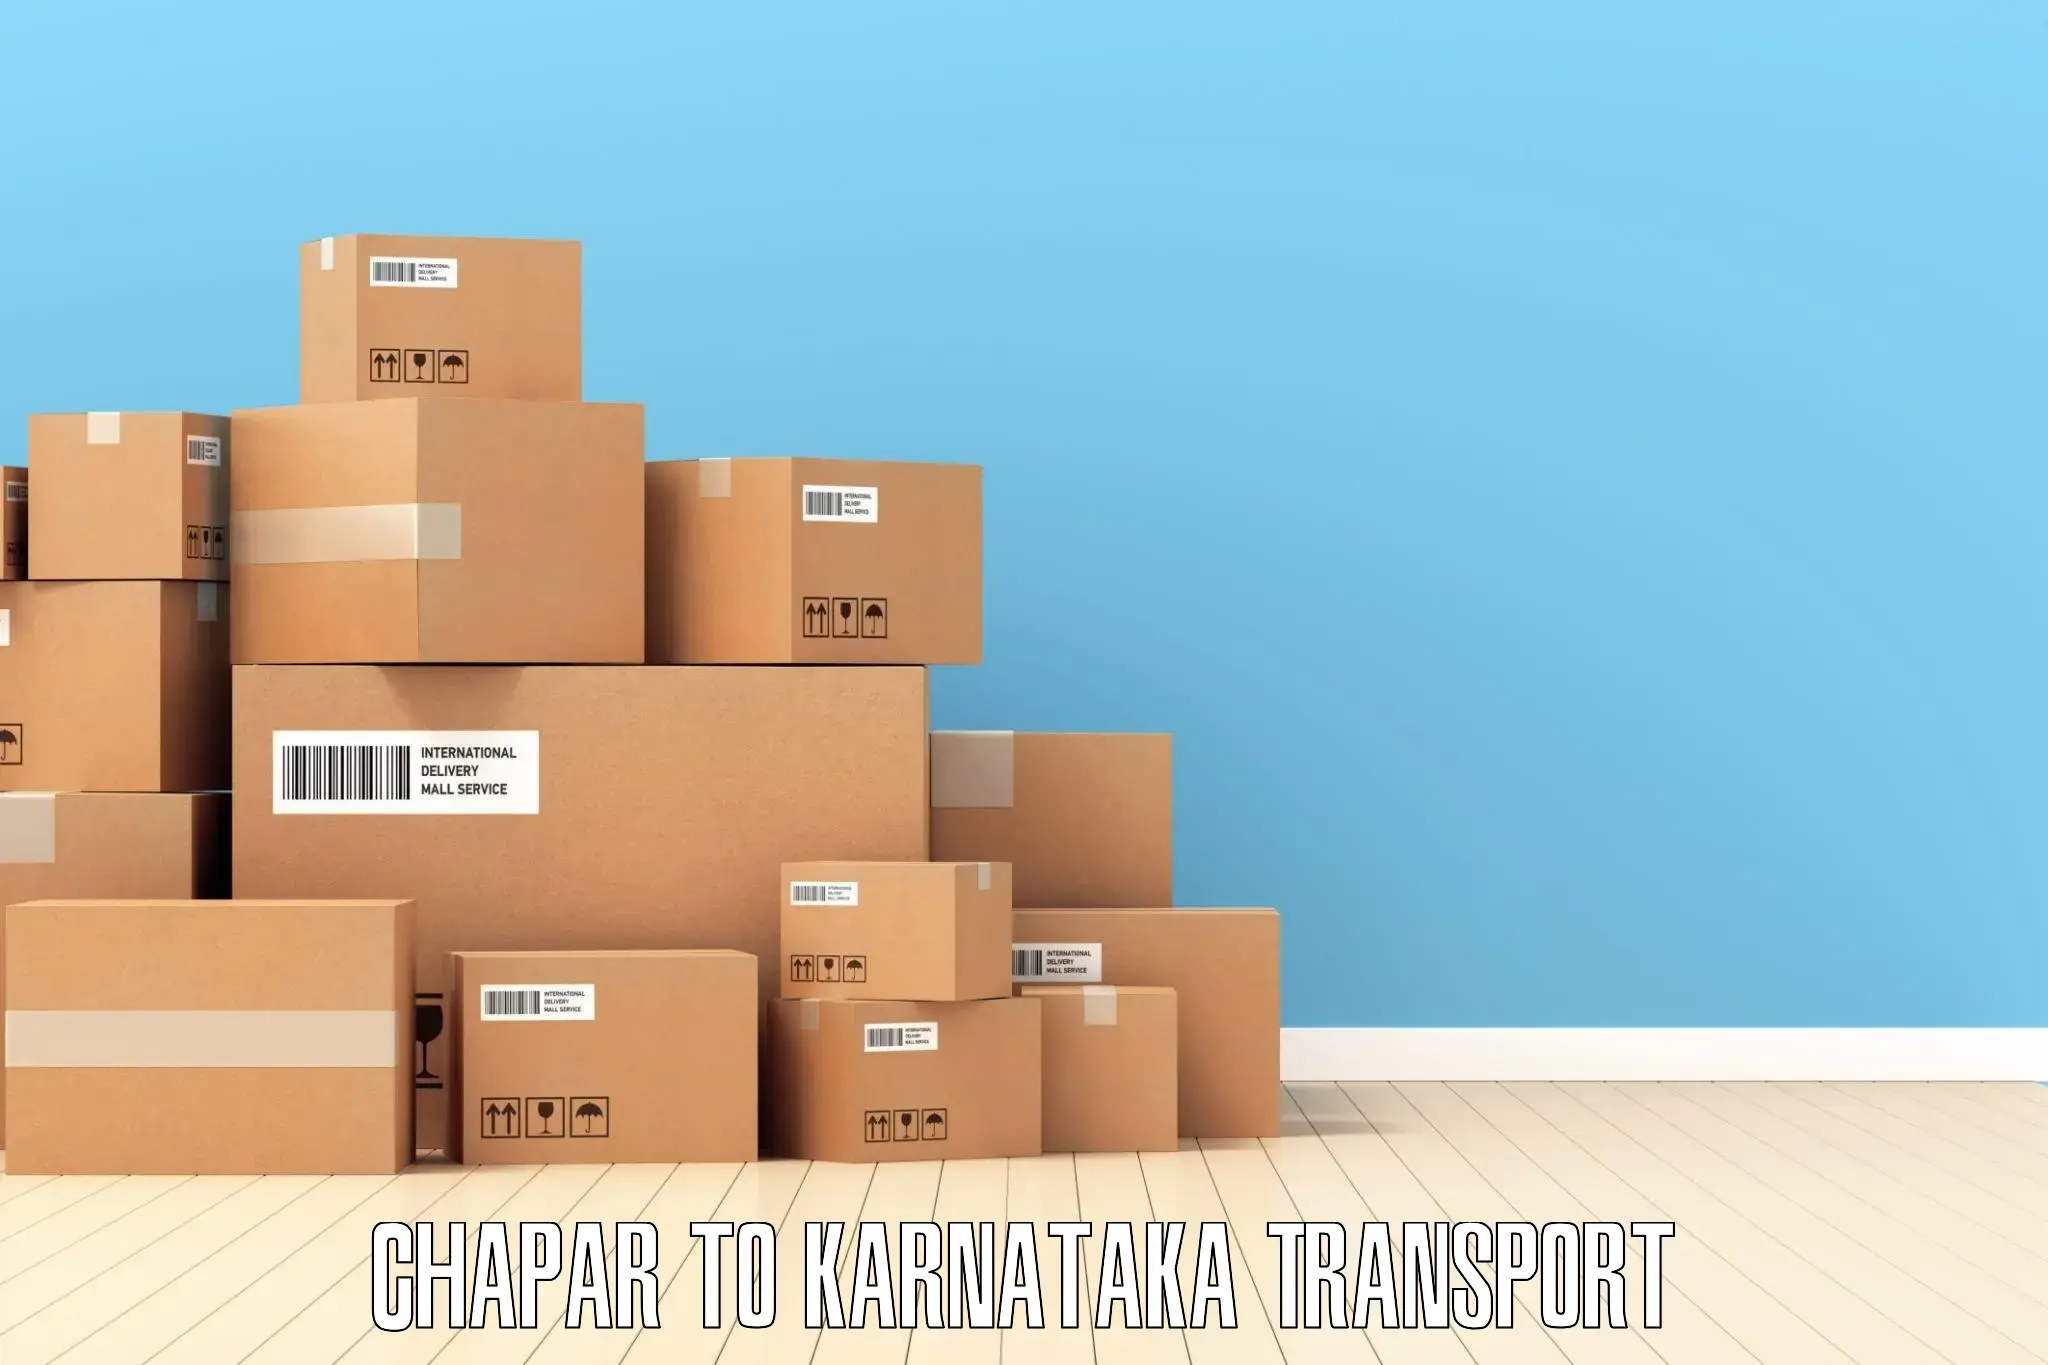 Shipping partner Chapar to Banavara